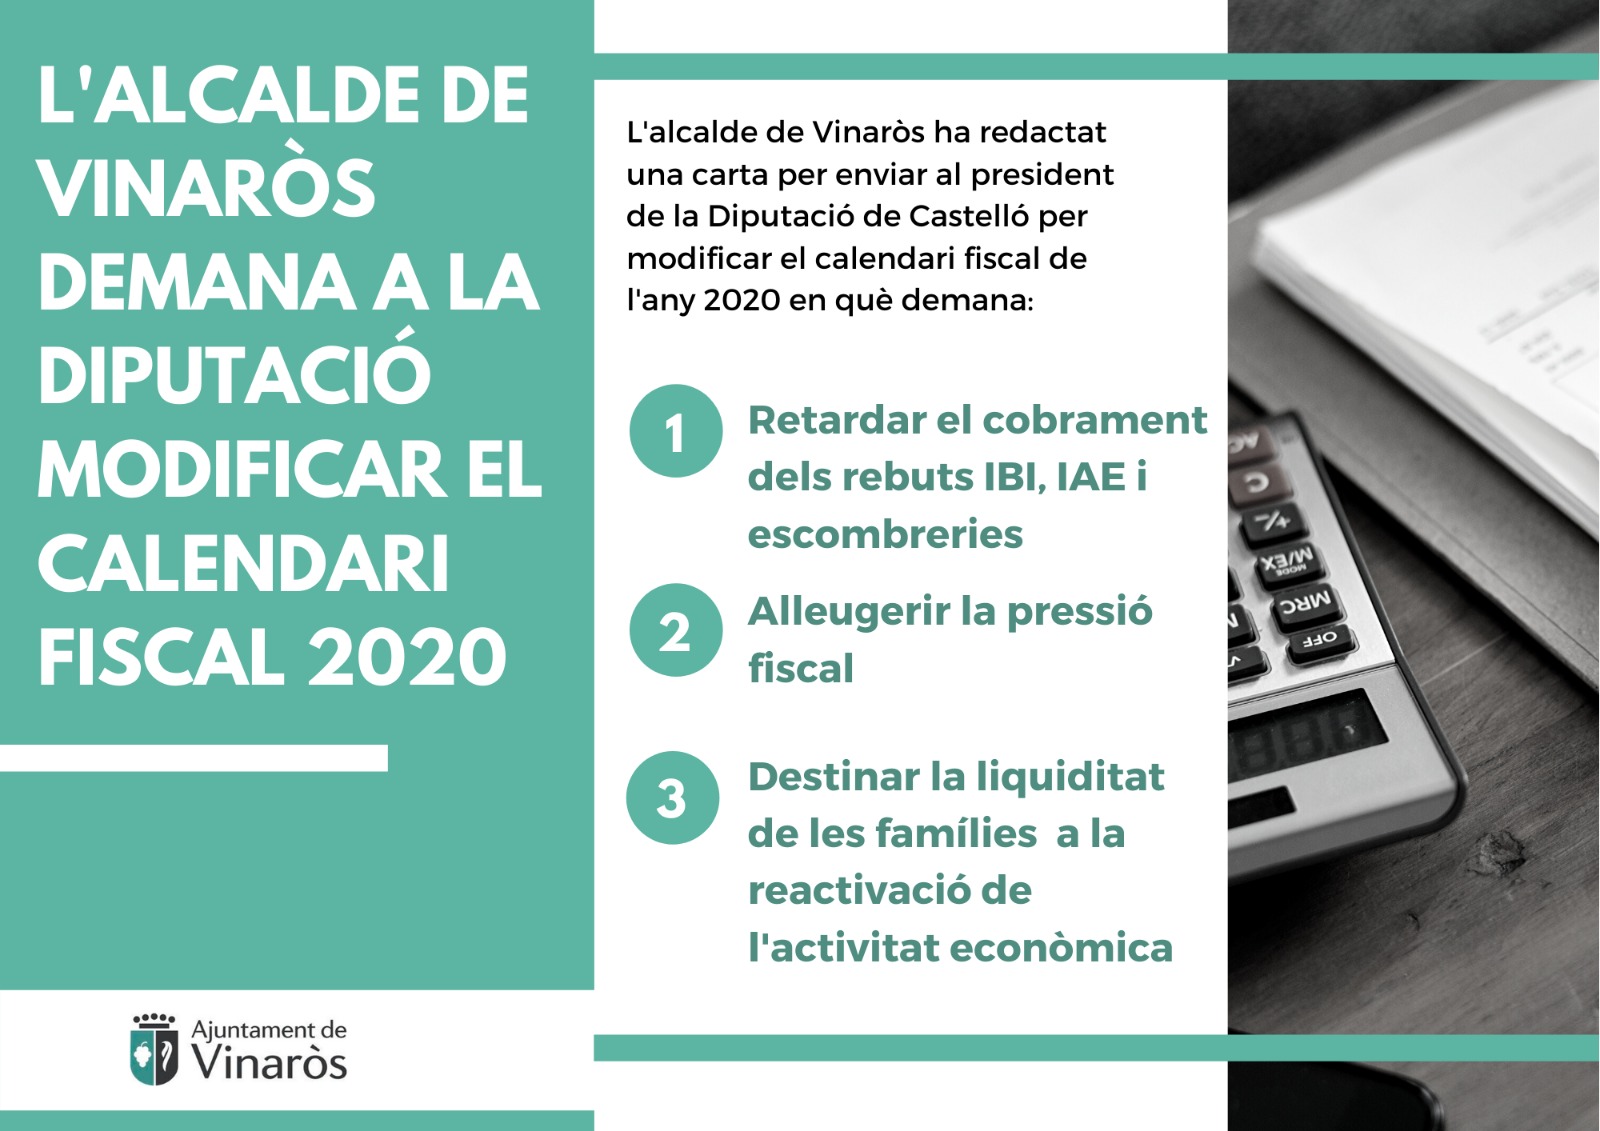 L’Ajuntament de Vinaròs demana a la Diputació modificar el calendari fiscal